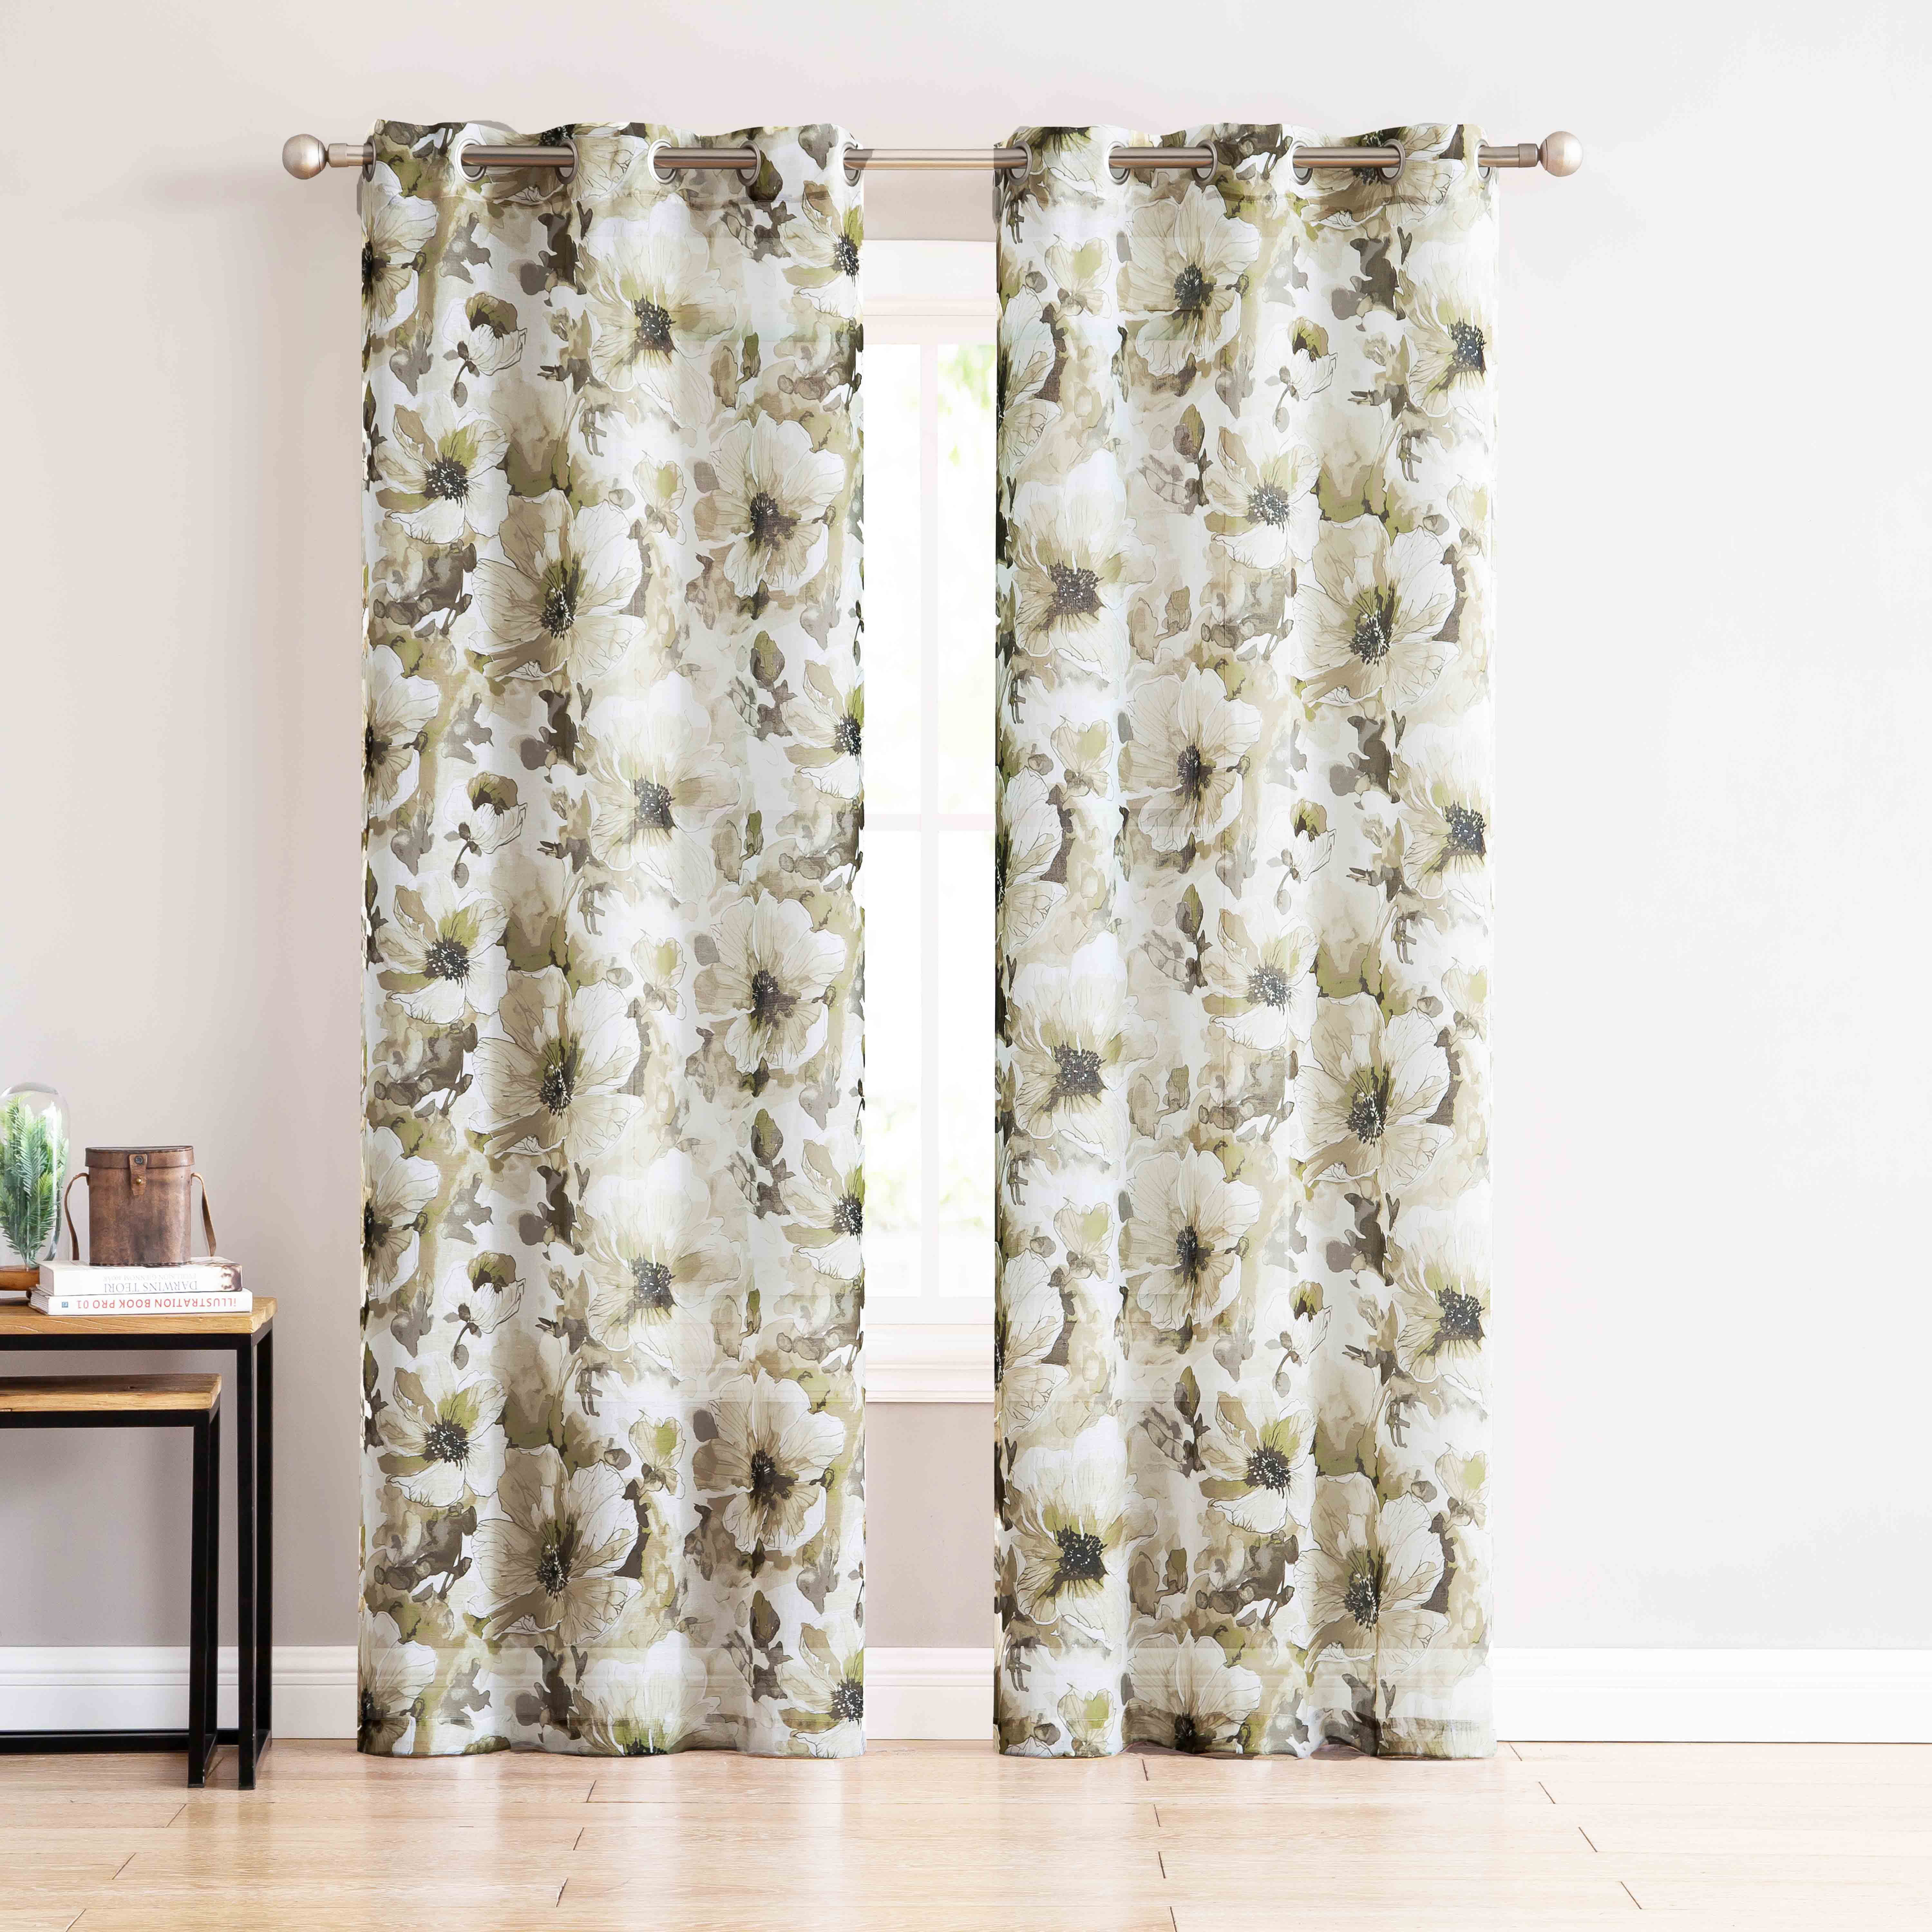 Sheer Grommet Window Curtain Panel Pair Taupe Beige Brown Flower Design 84in L 